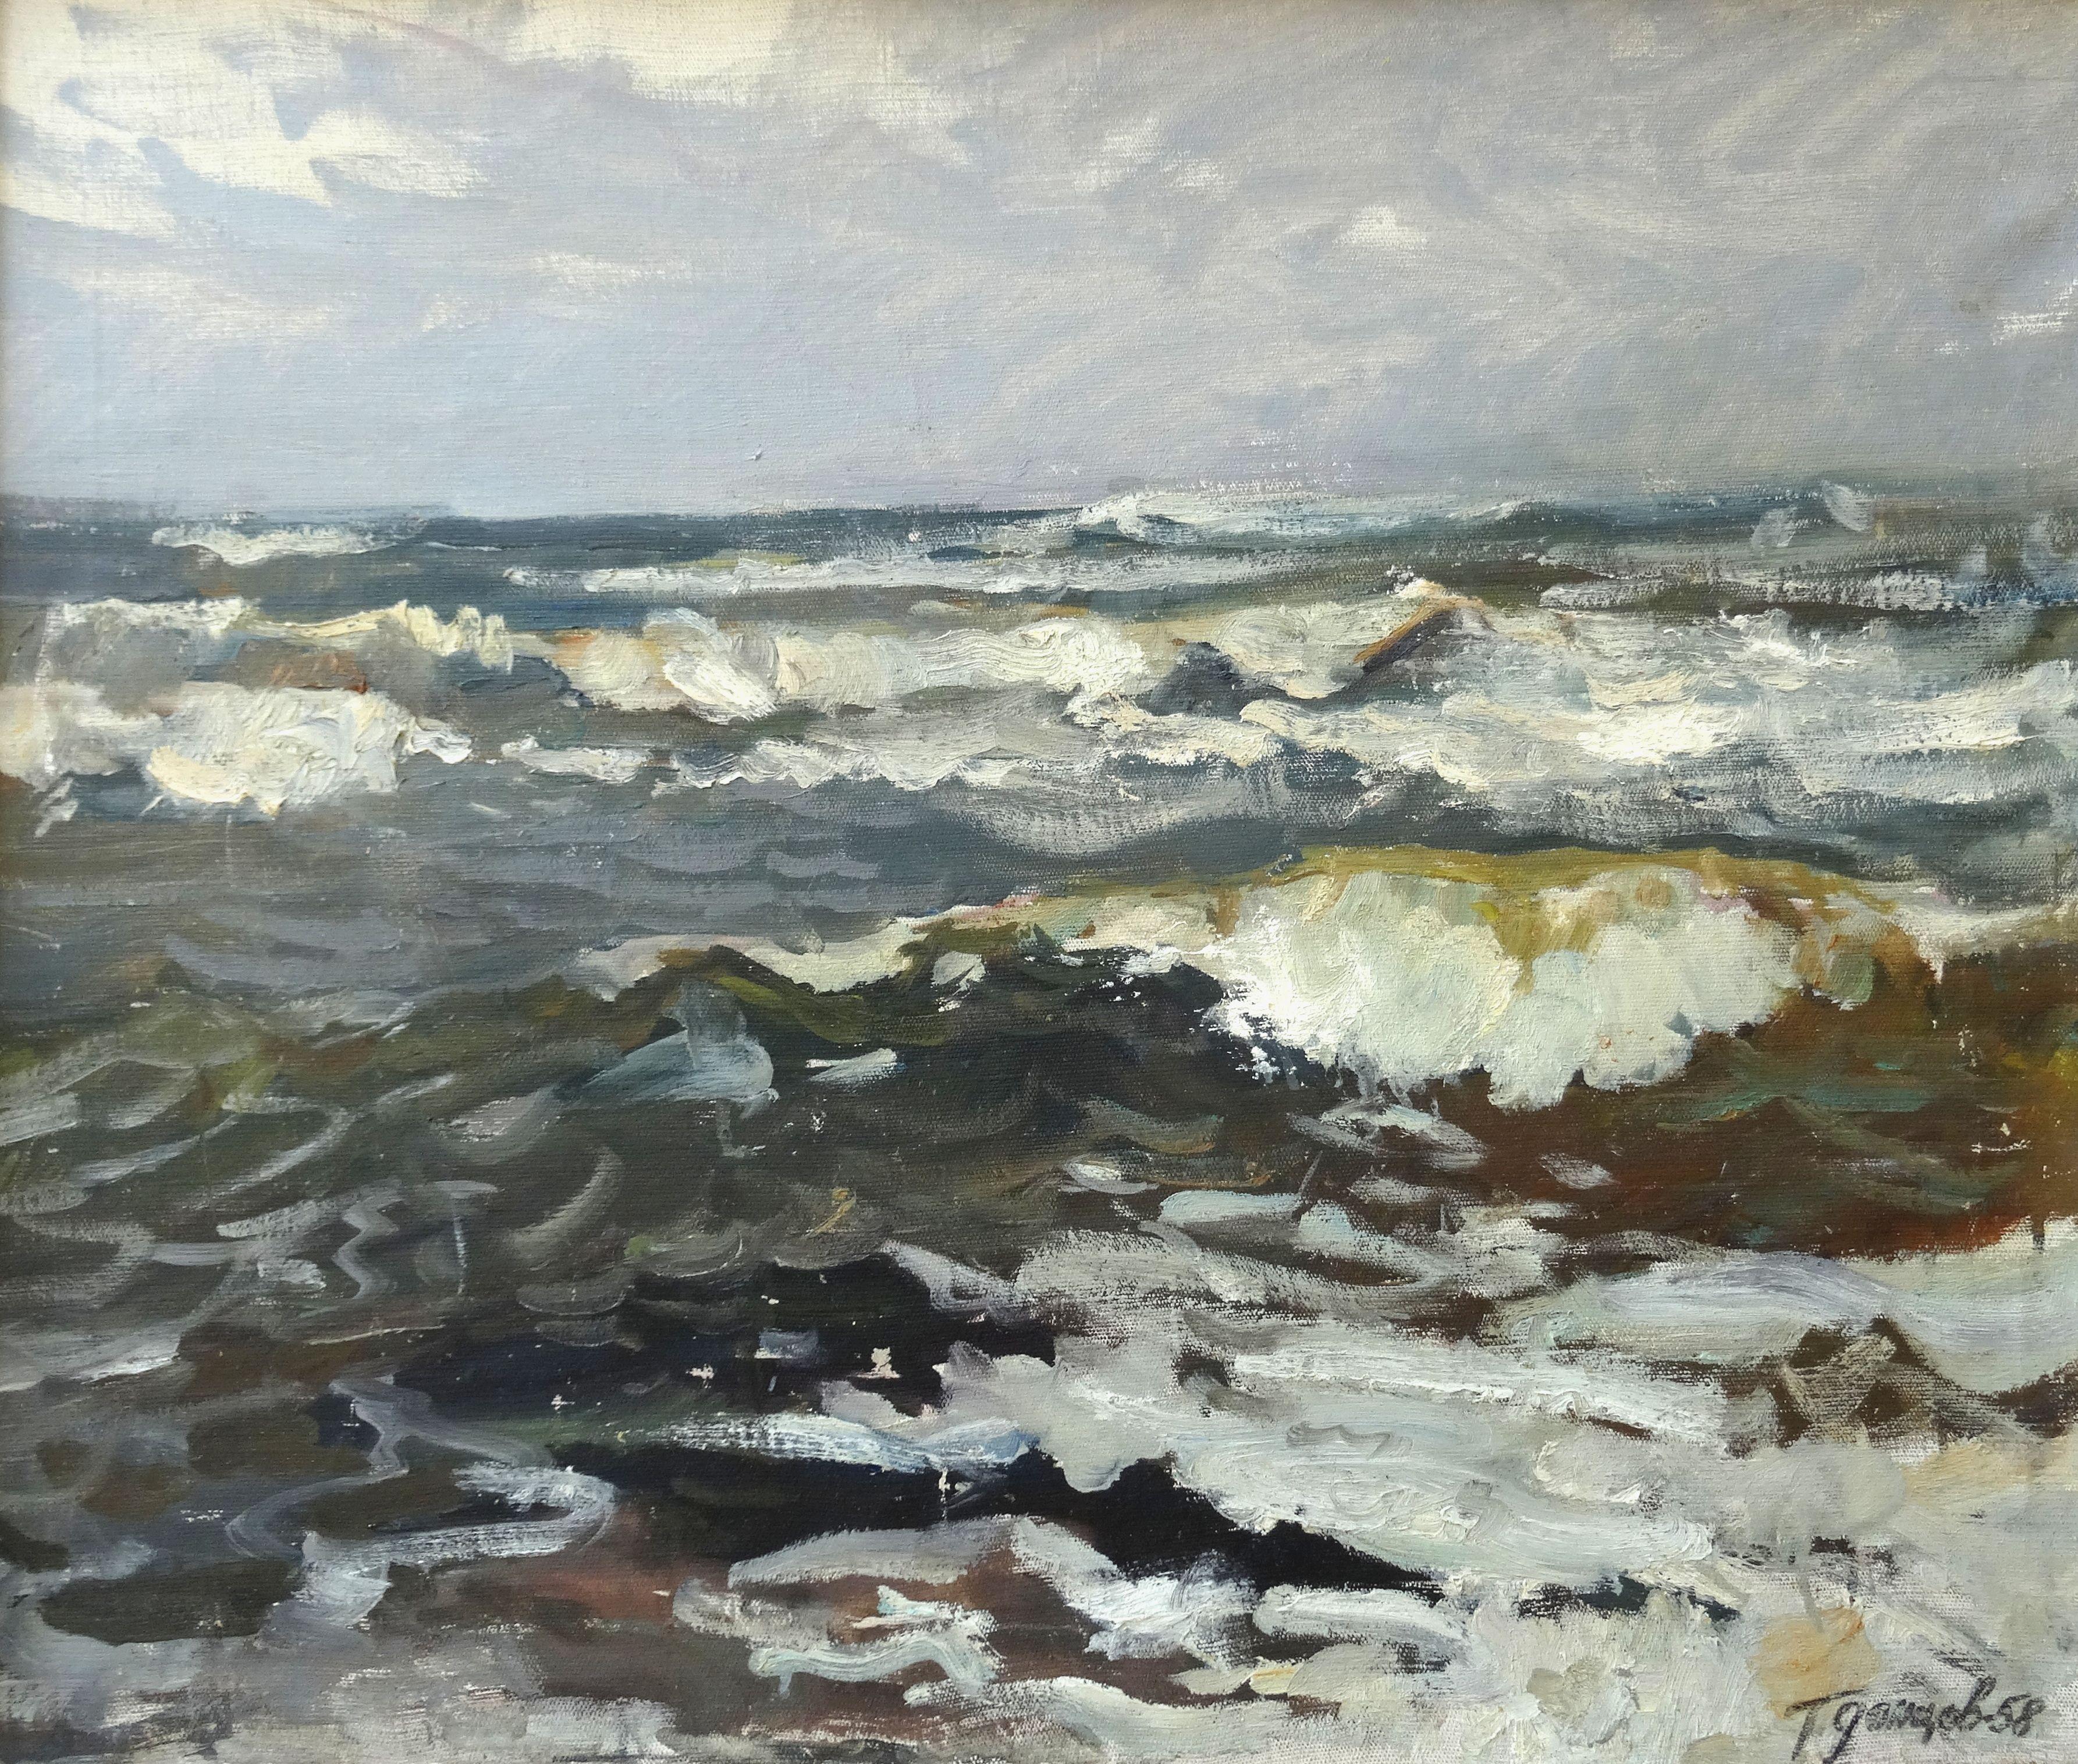 Landscape Painting German Dontsov - La mer. Peinture à l'huile sur toile 61 x 70 cm